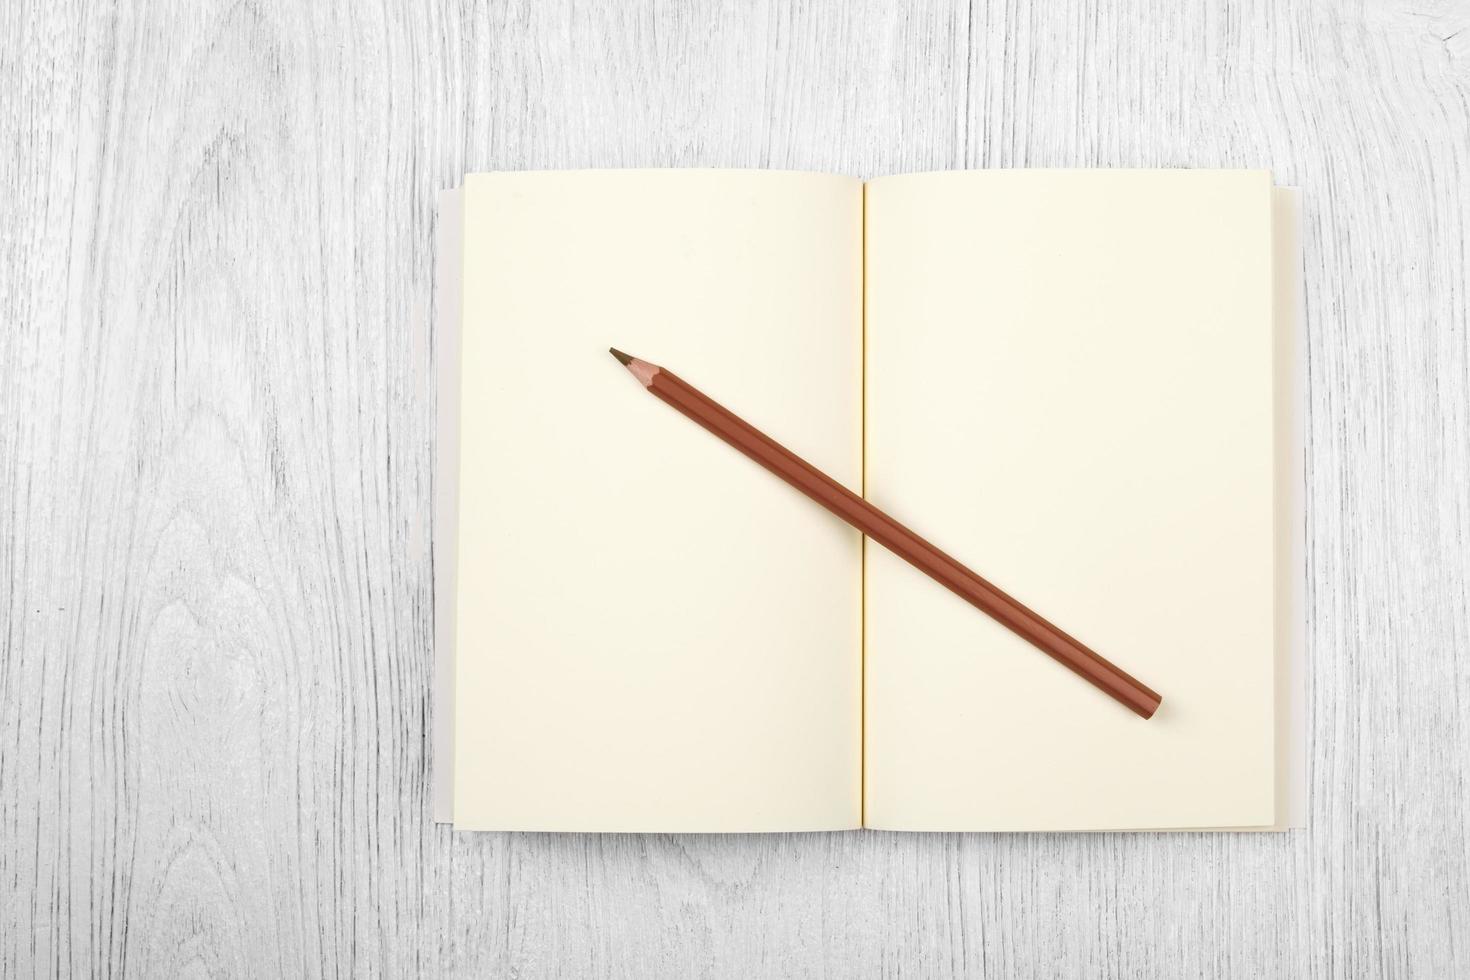 cahier marron ouvert et un crayon sur une table en bois blanc, vue de dessus photo